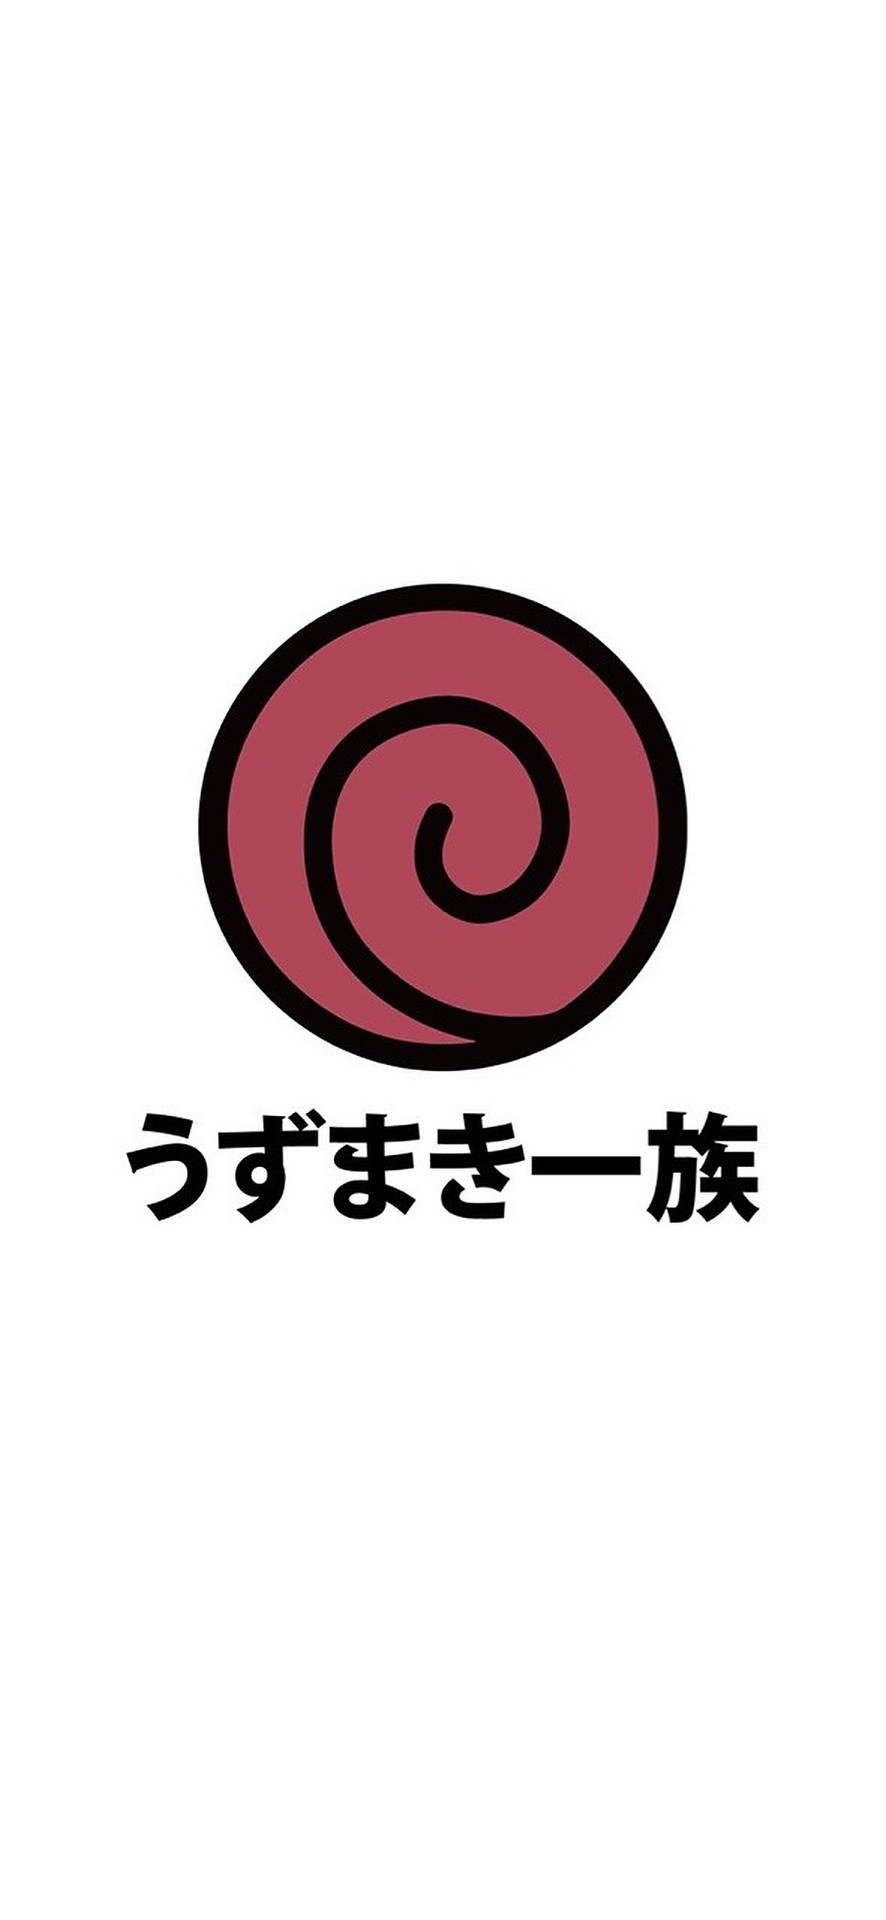 Rotesuzumaki Clan Logo Wallpaper